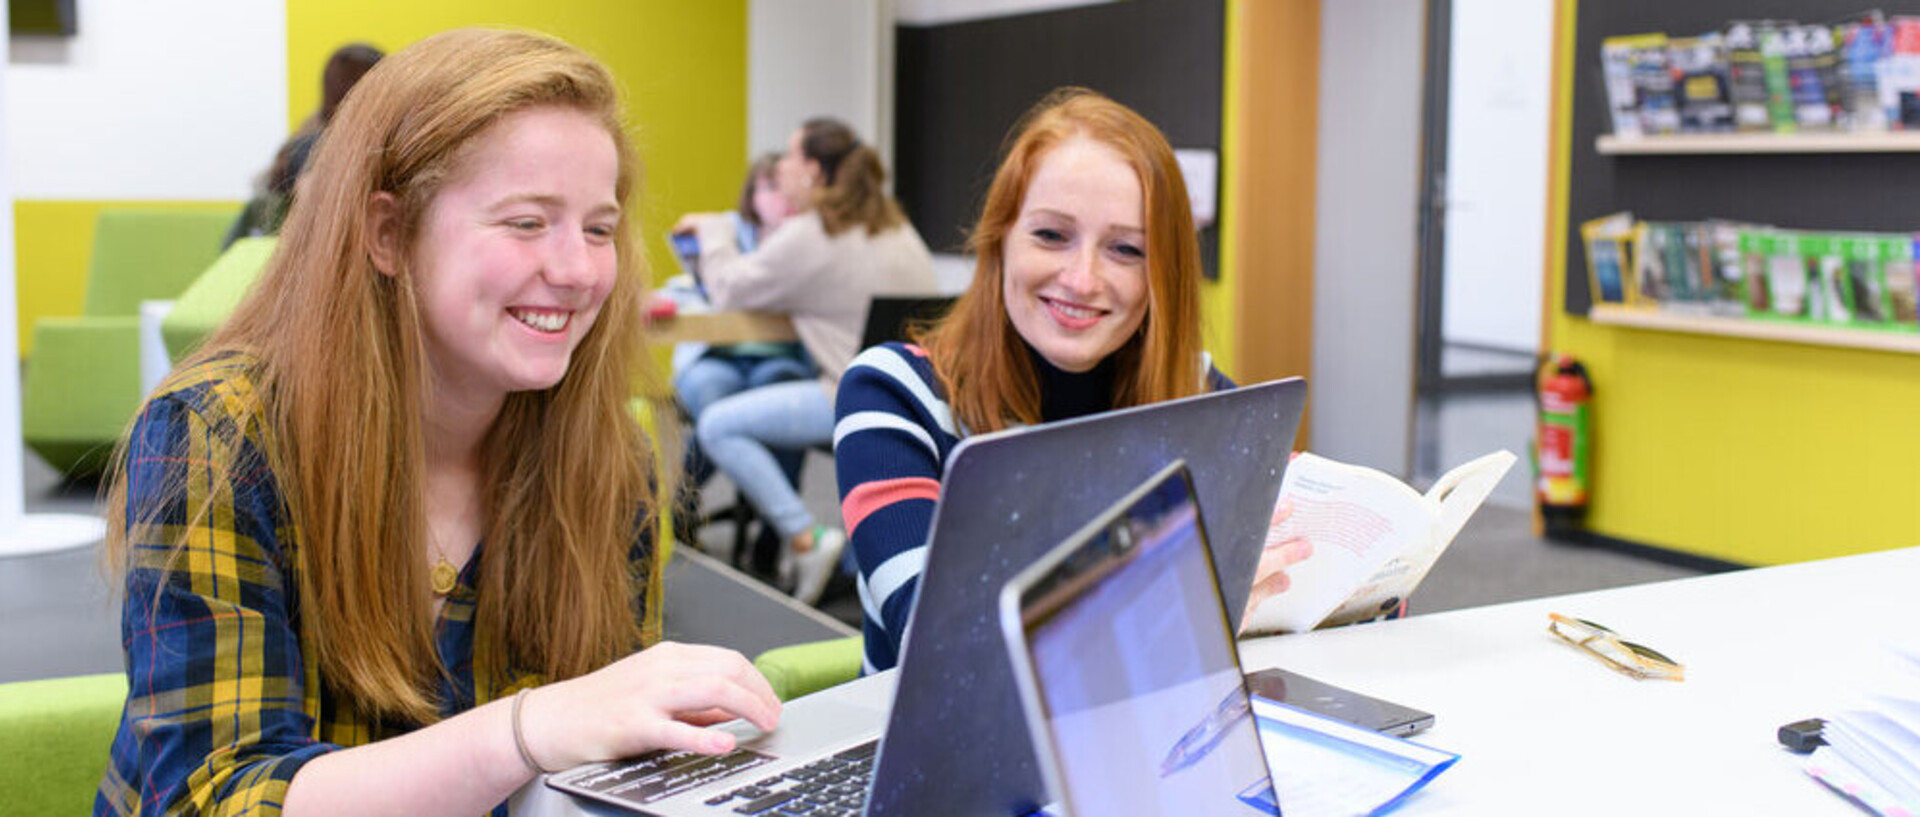 Zwei Studentinnen blicken lachend auf einen Laptop.